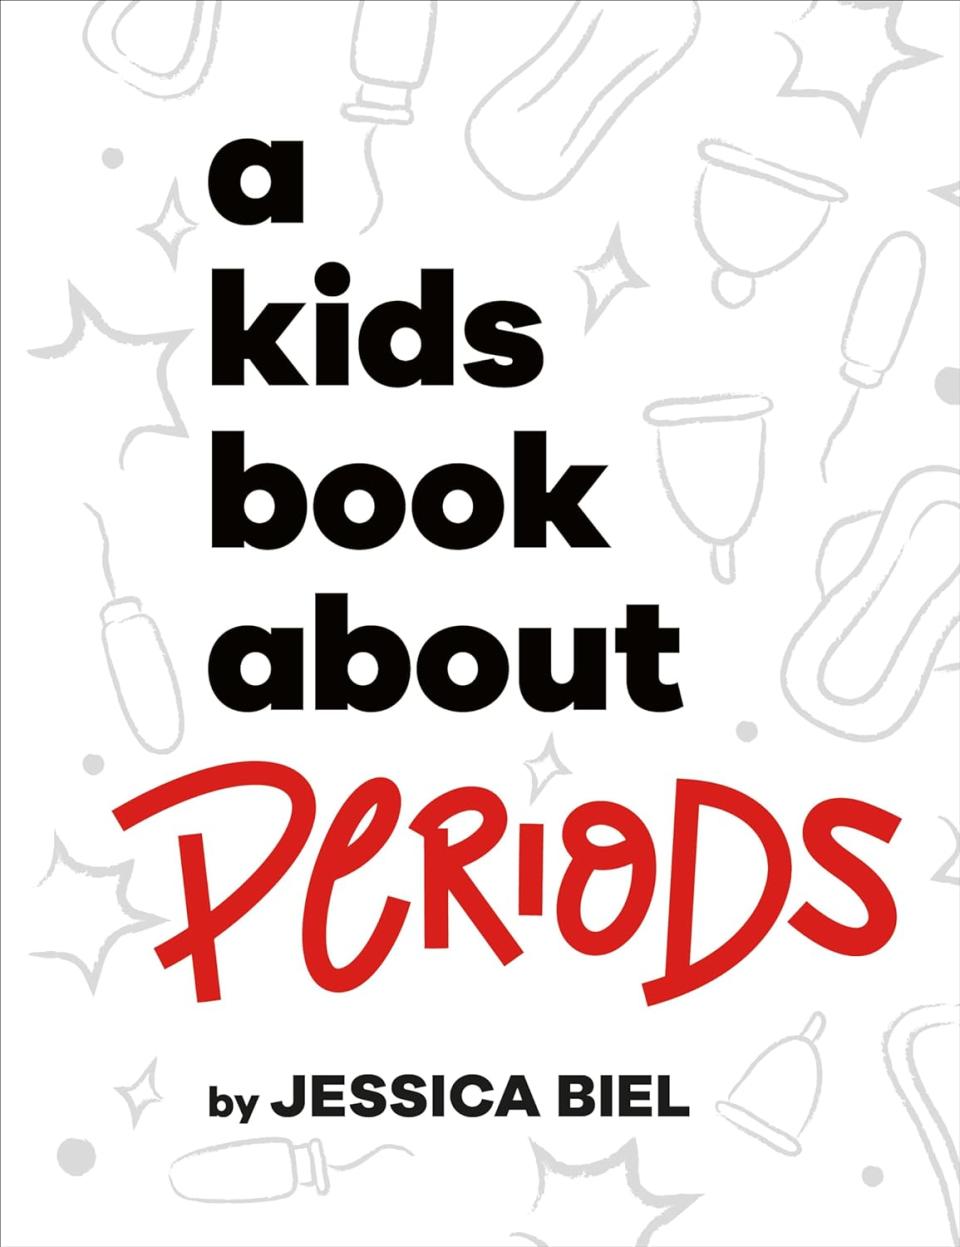 Jessica Biel Writing Period Book For Kids